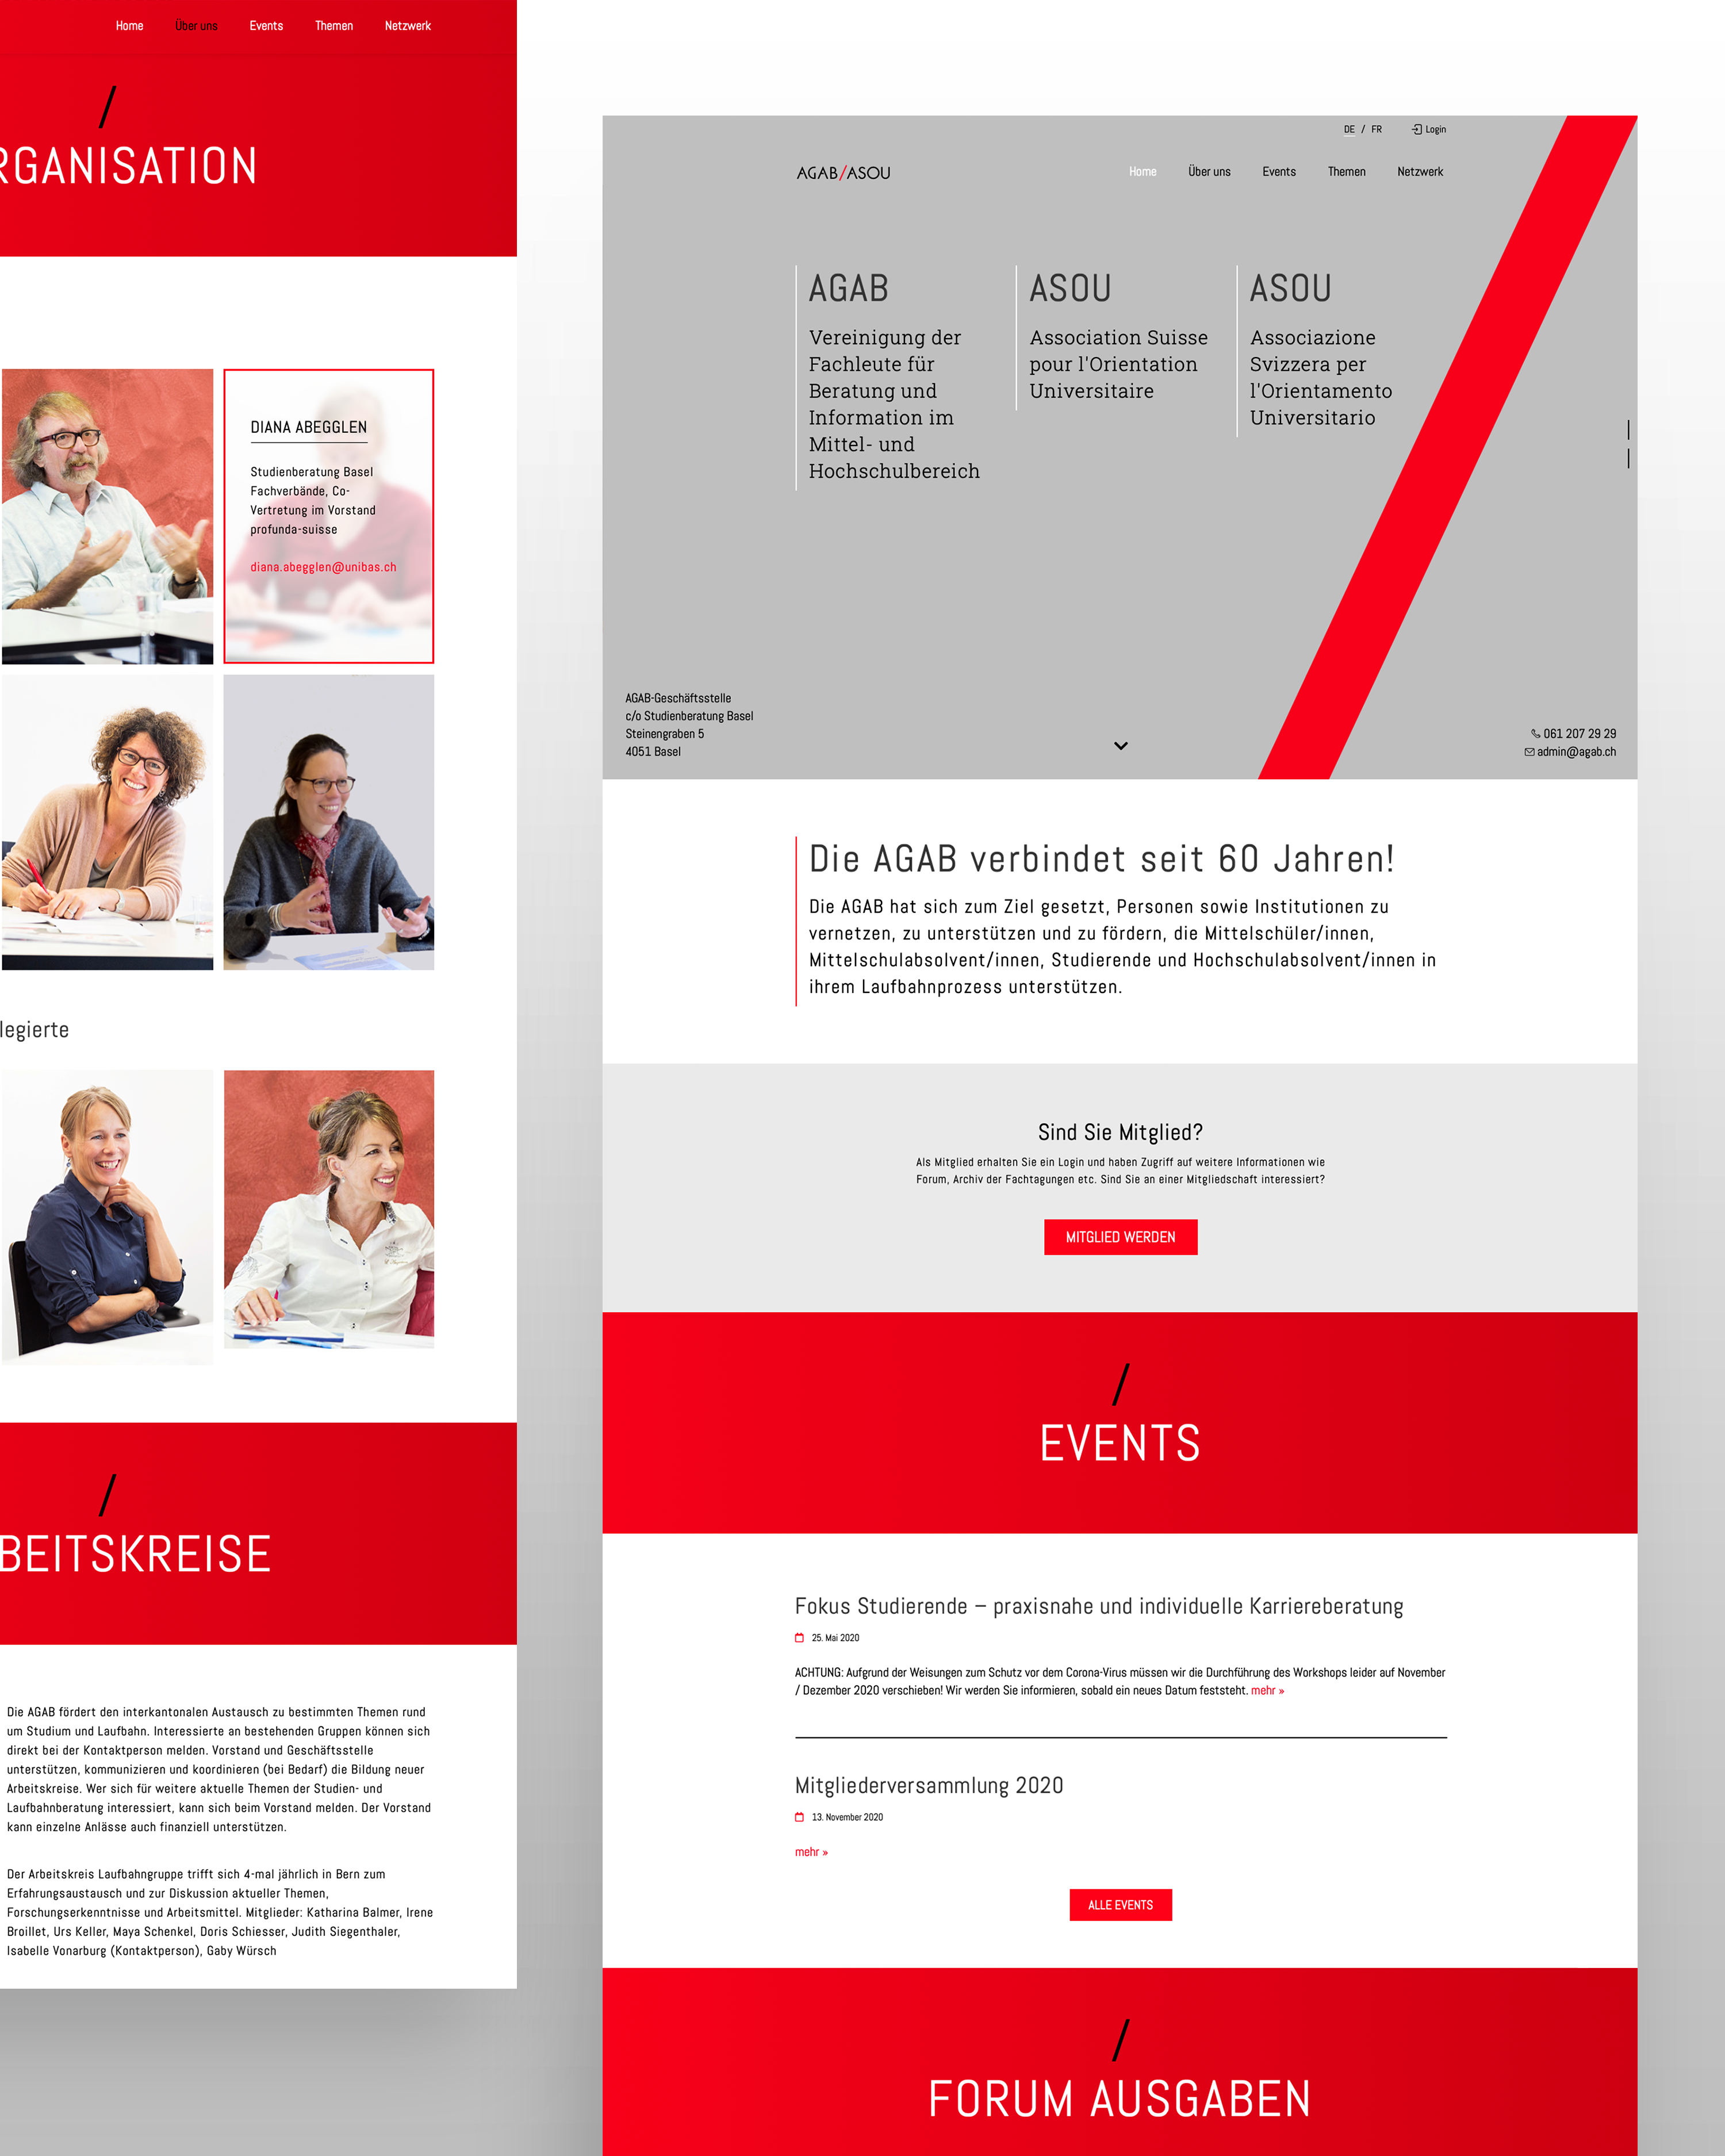 Webdesign und custom WordPress - by 8chDesign - Schweizer WordPress Agentur in Zürich